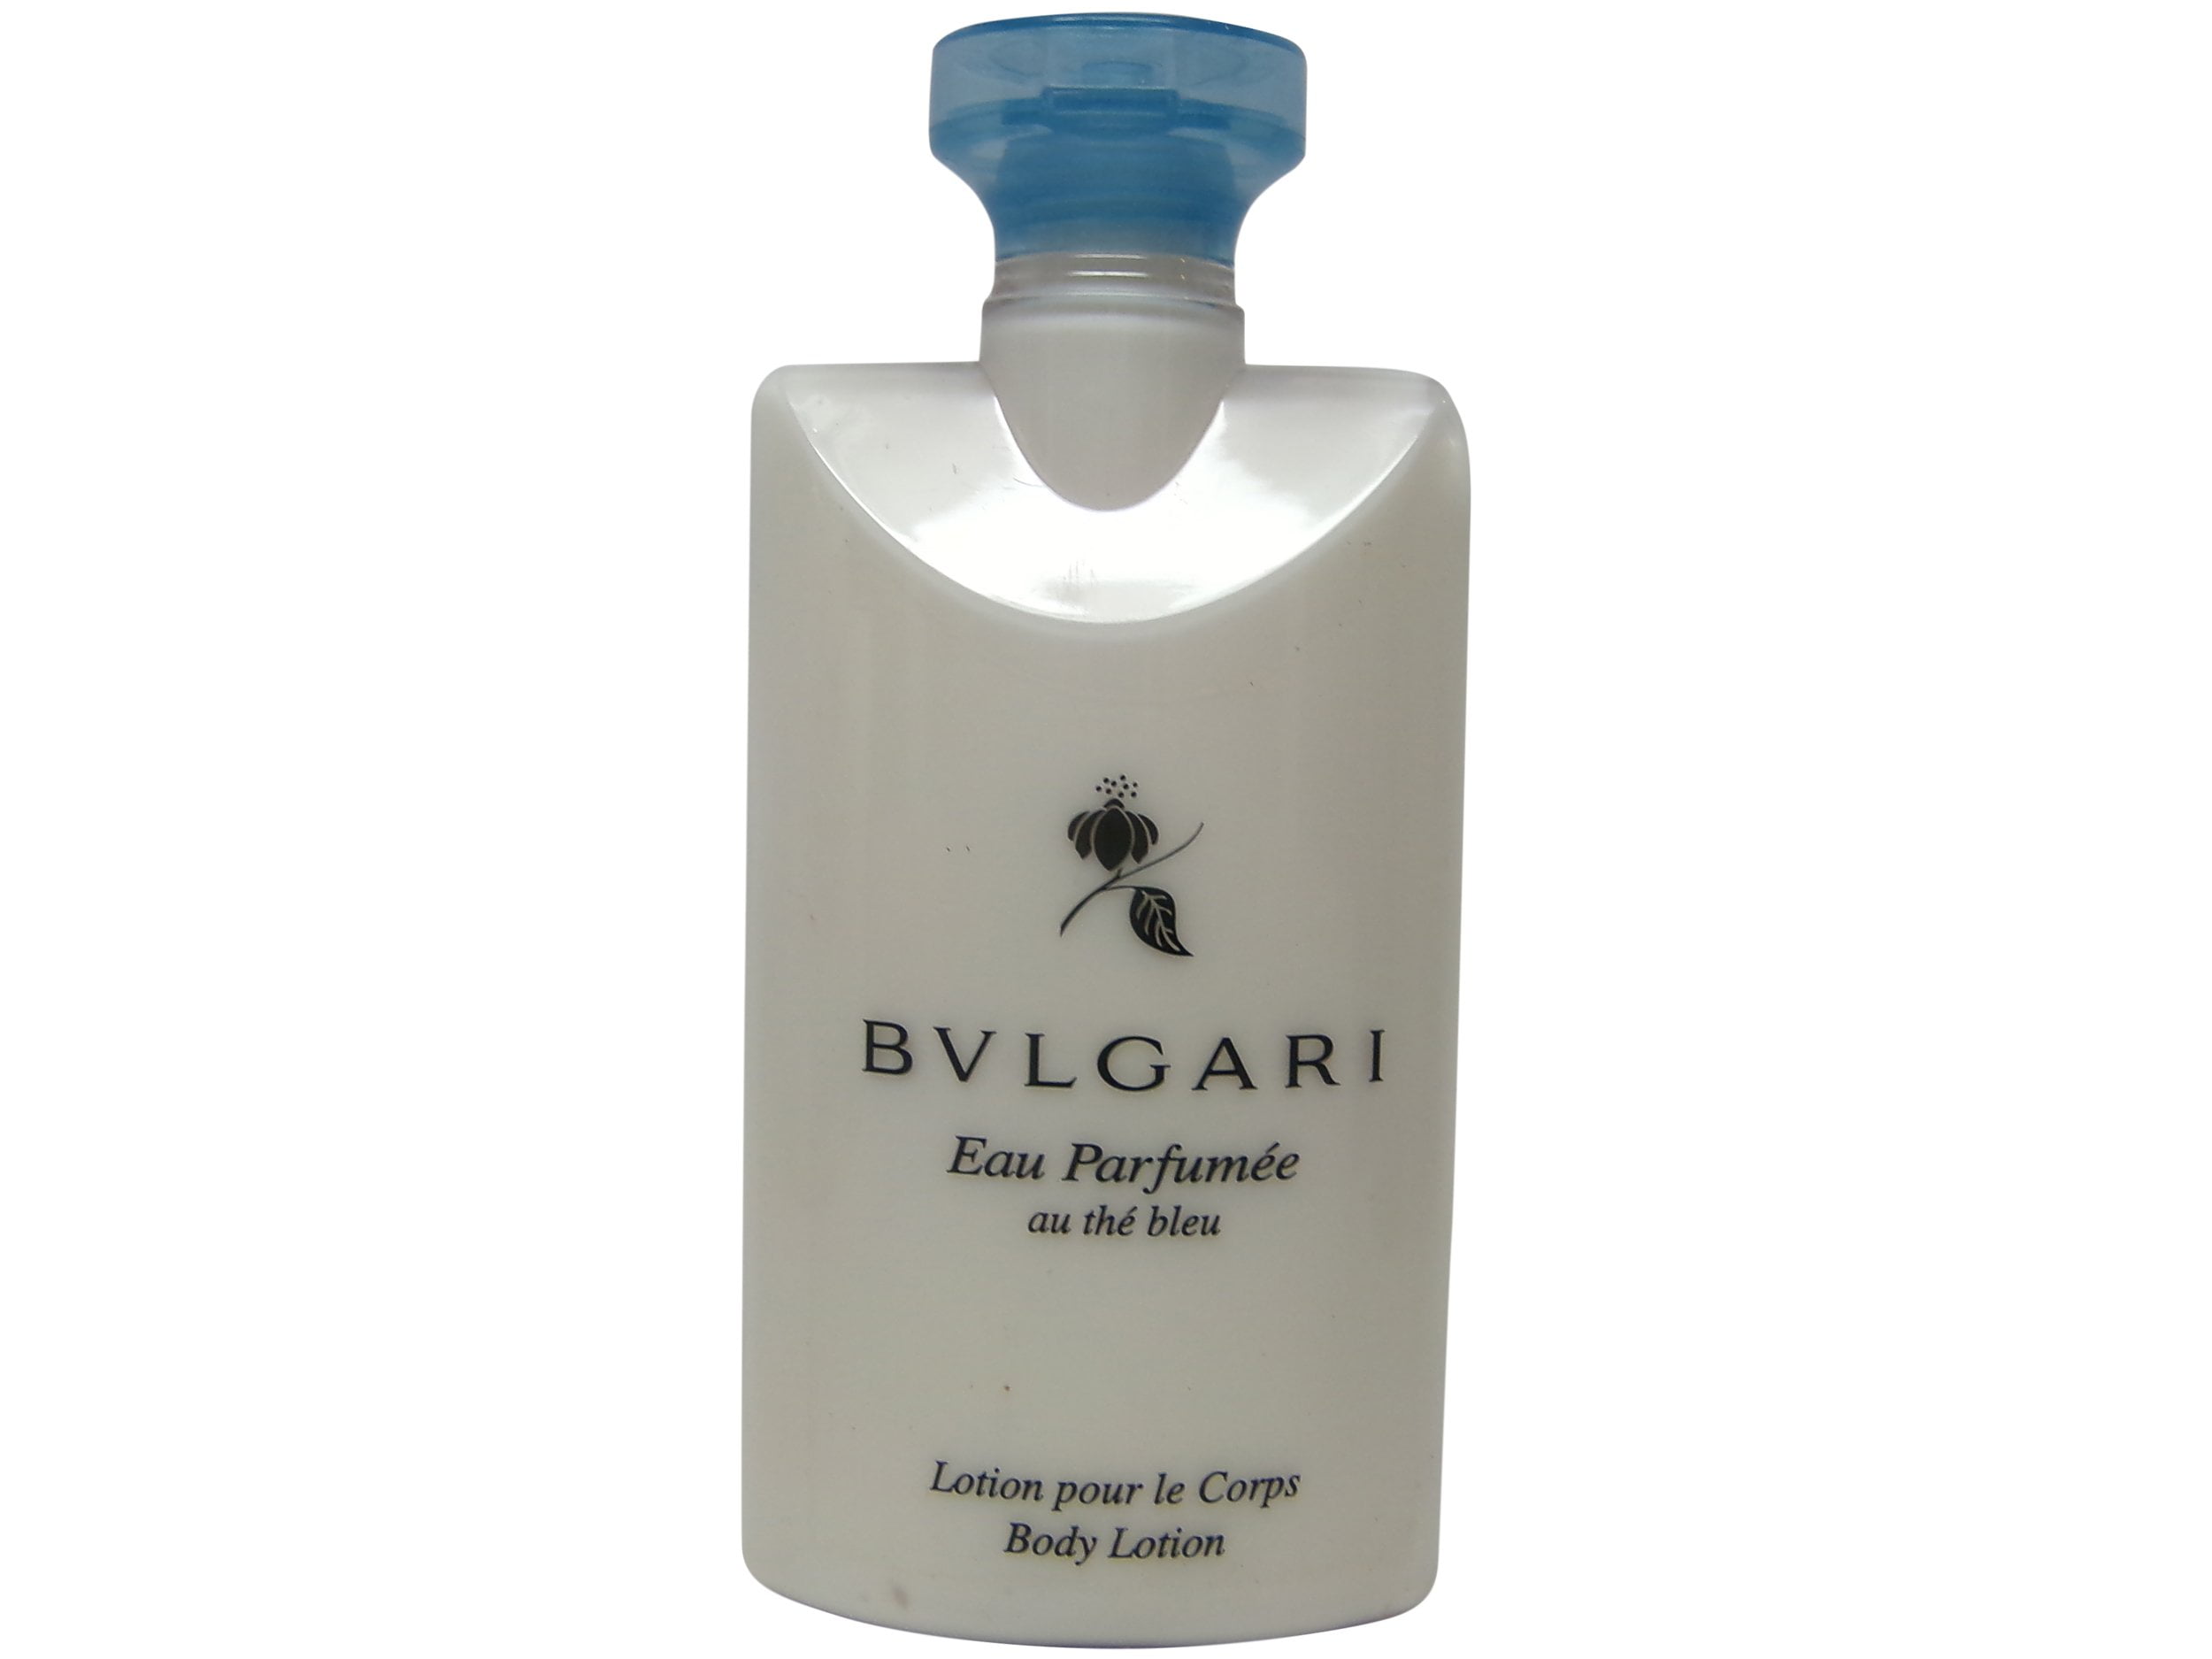 bvlgari lotion price